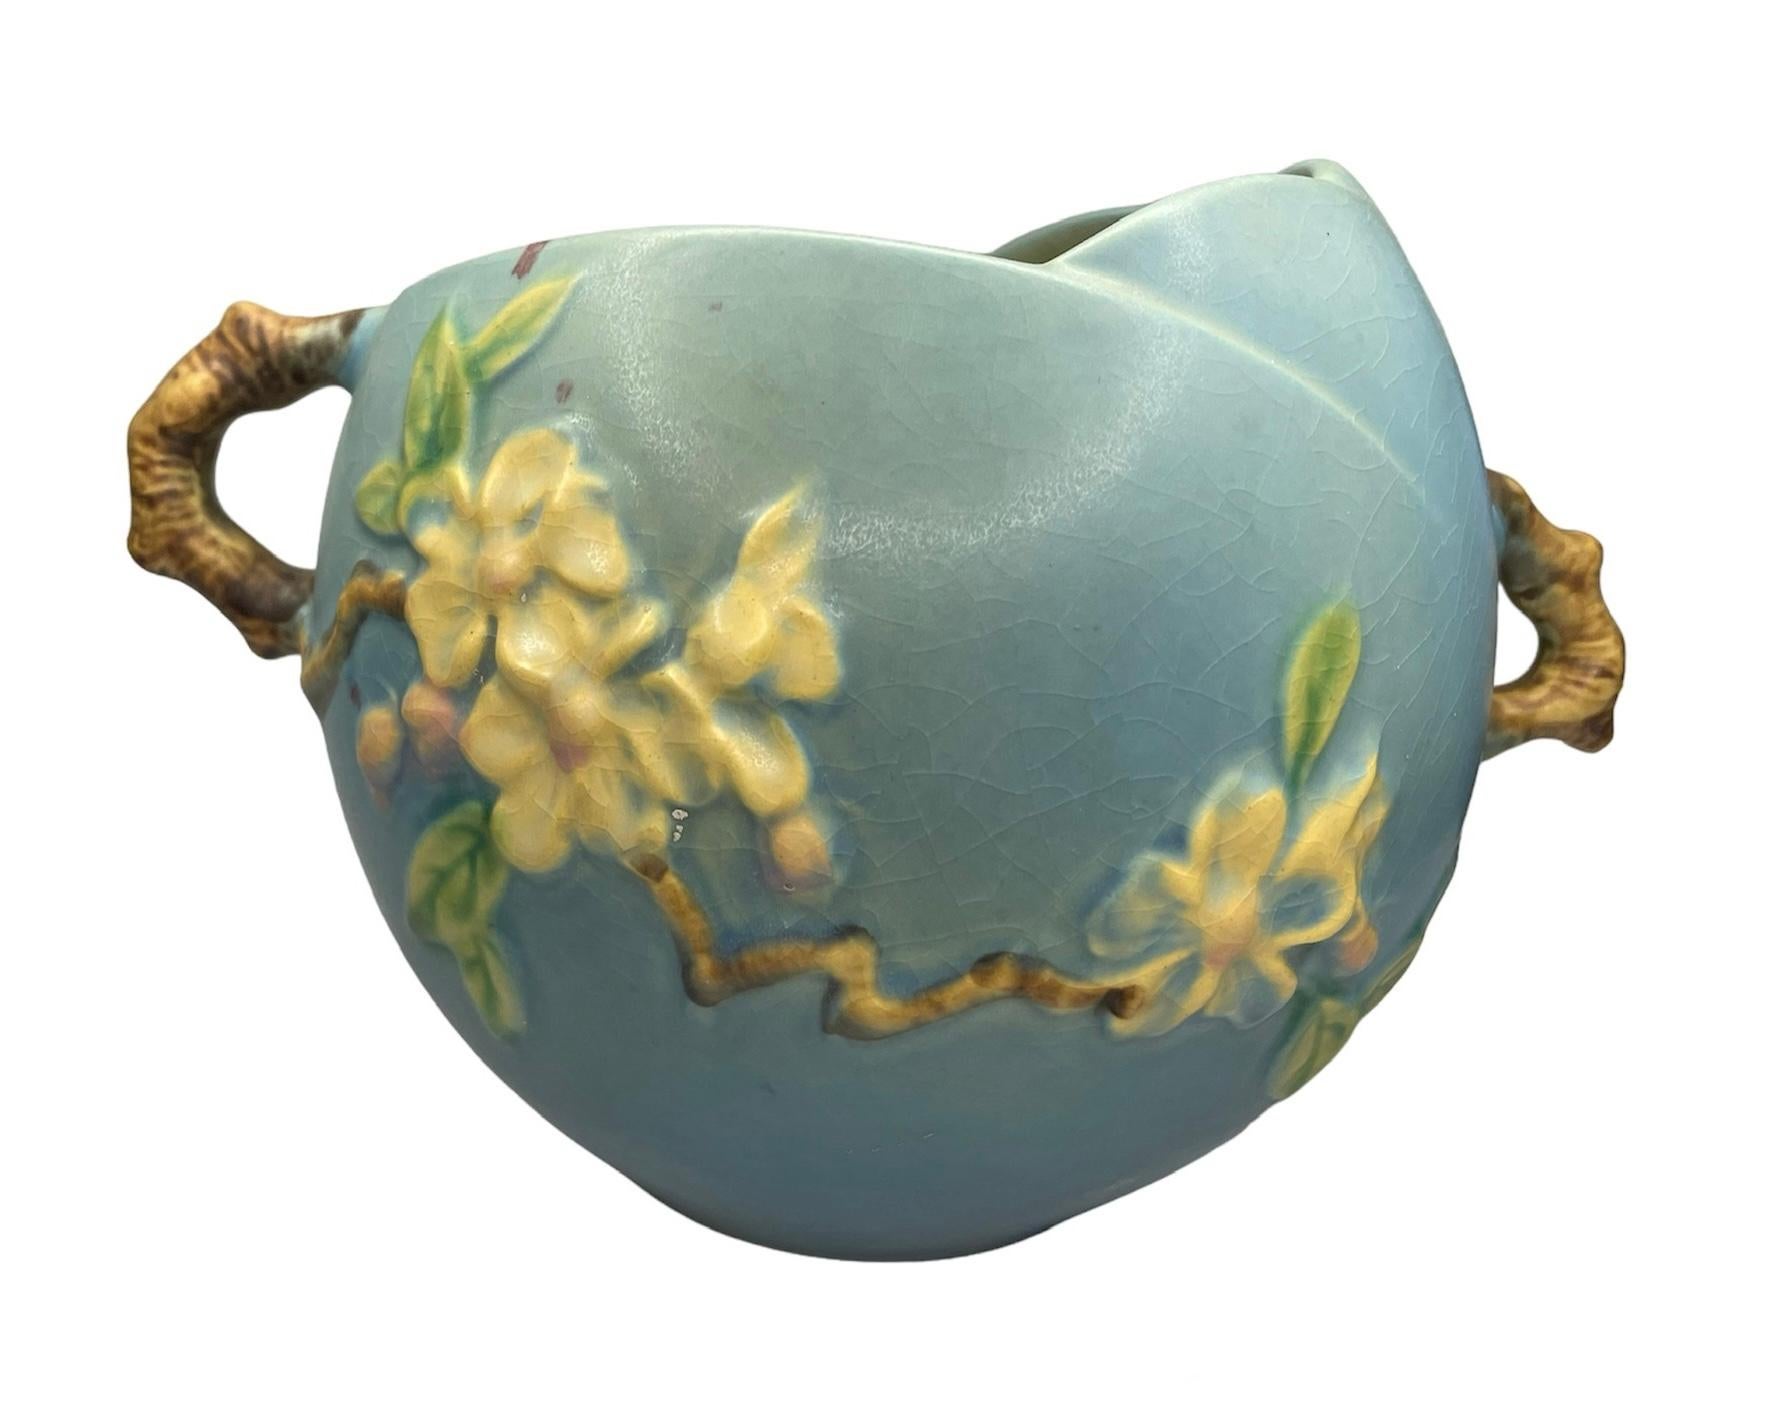 Molded Roseville Art Pottery Apple Blossom Pattern Bowl